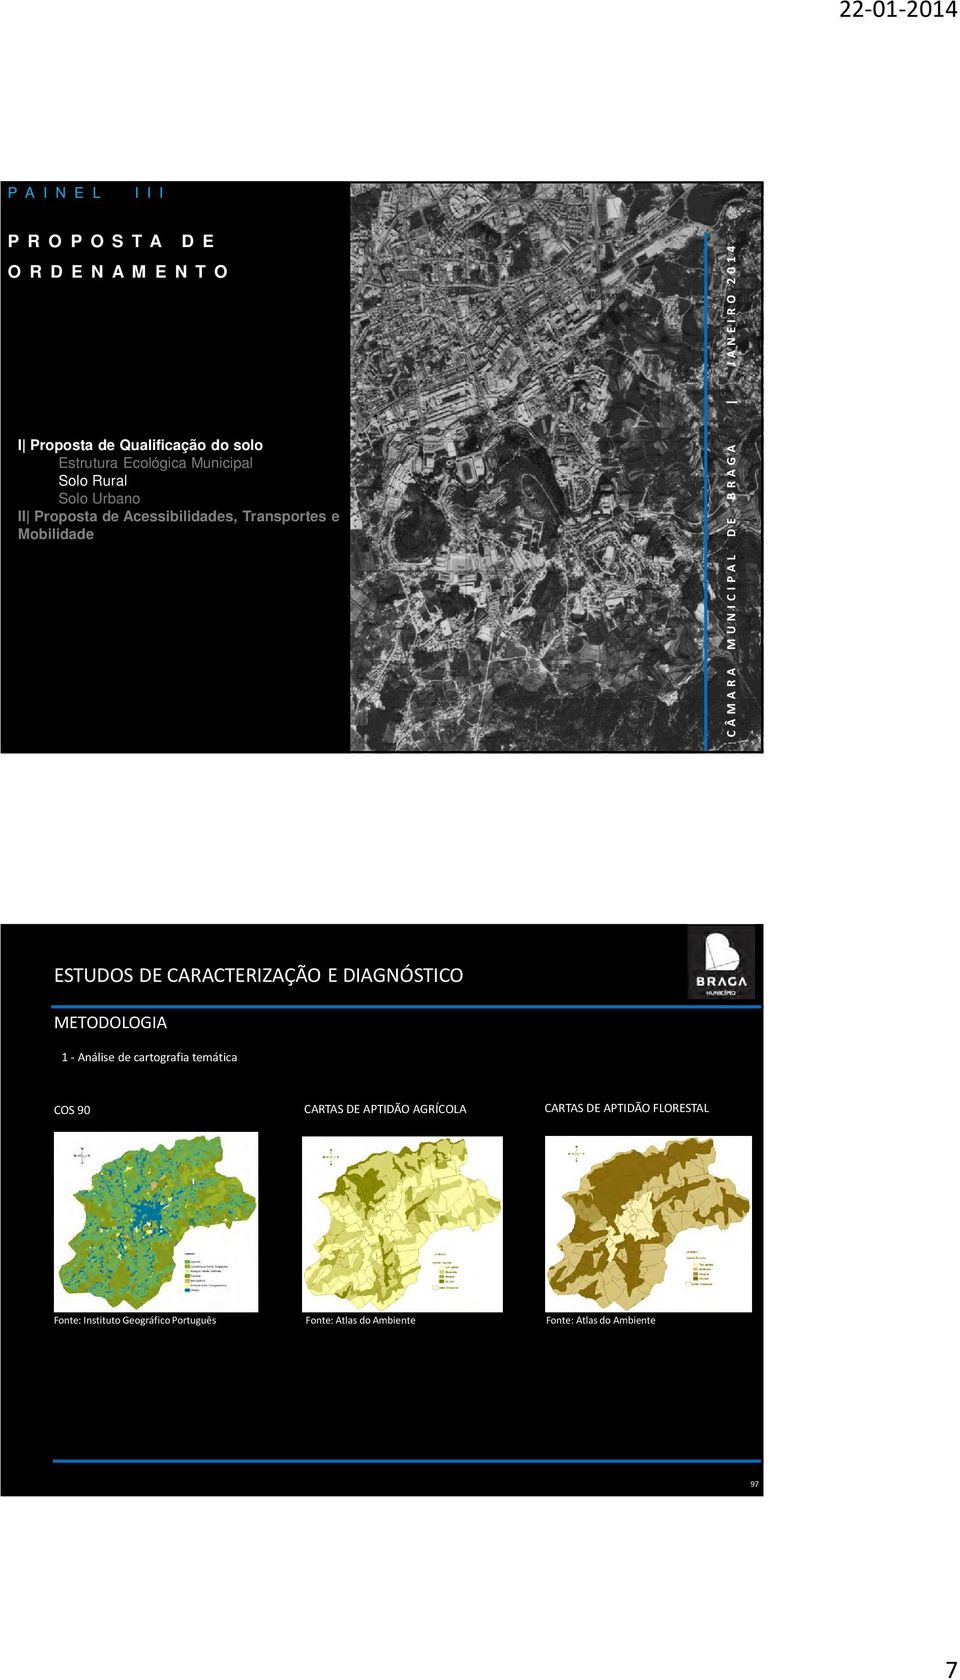 L D E B R A G A J A N E I R O 2 0 1 4 METODOLOGIA 1- Análise de cartografia temática COS 90 CARTAS DE APTIDÃO